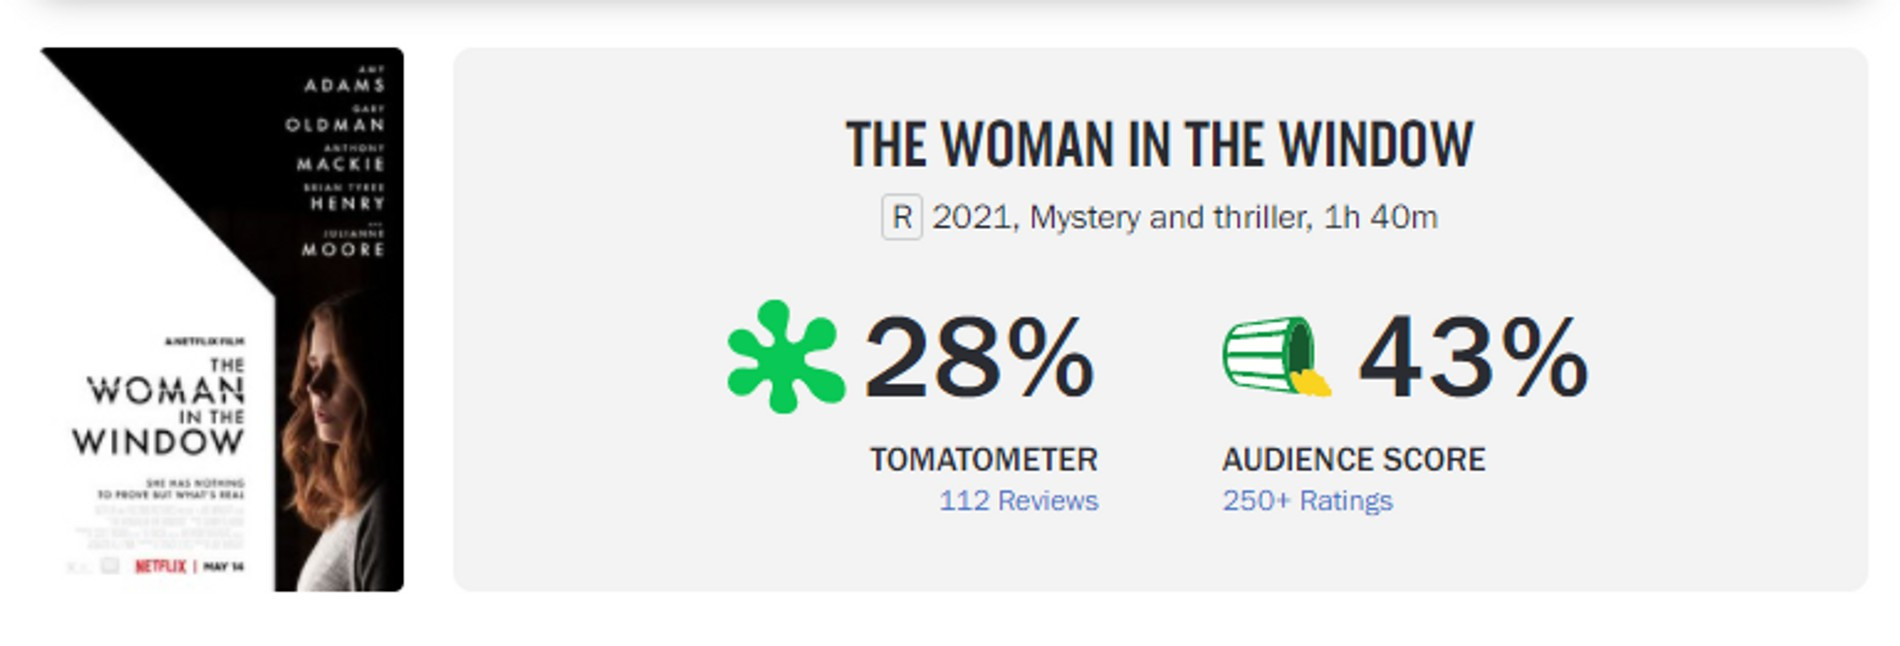 Скриншот страницы фильма на сайте Rotten Tomatoes